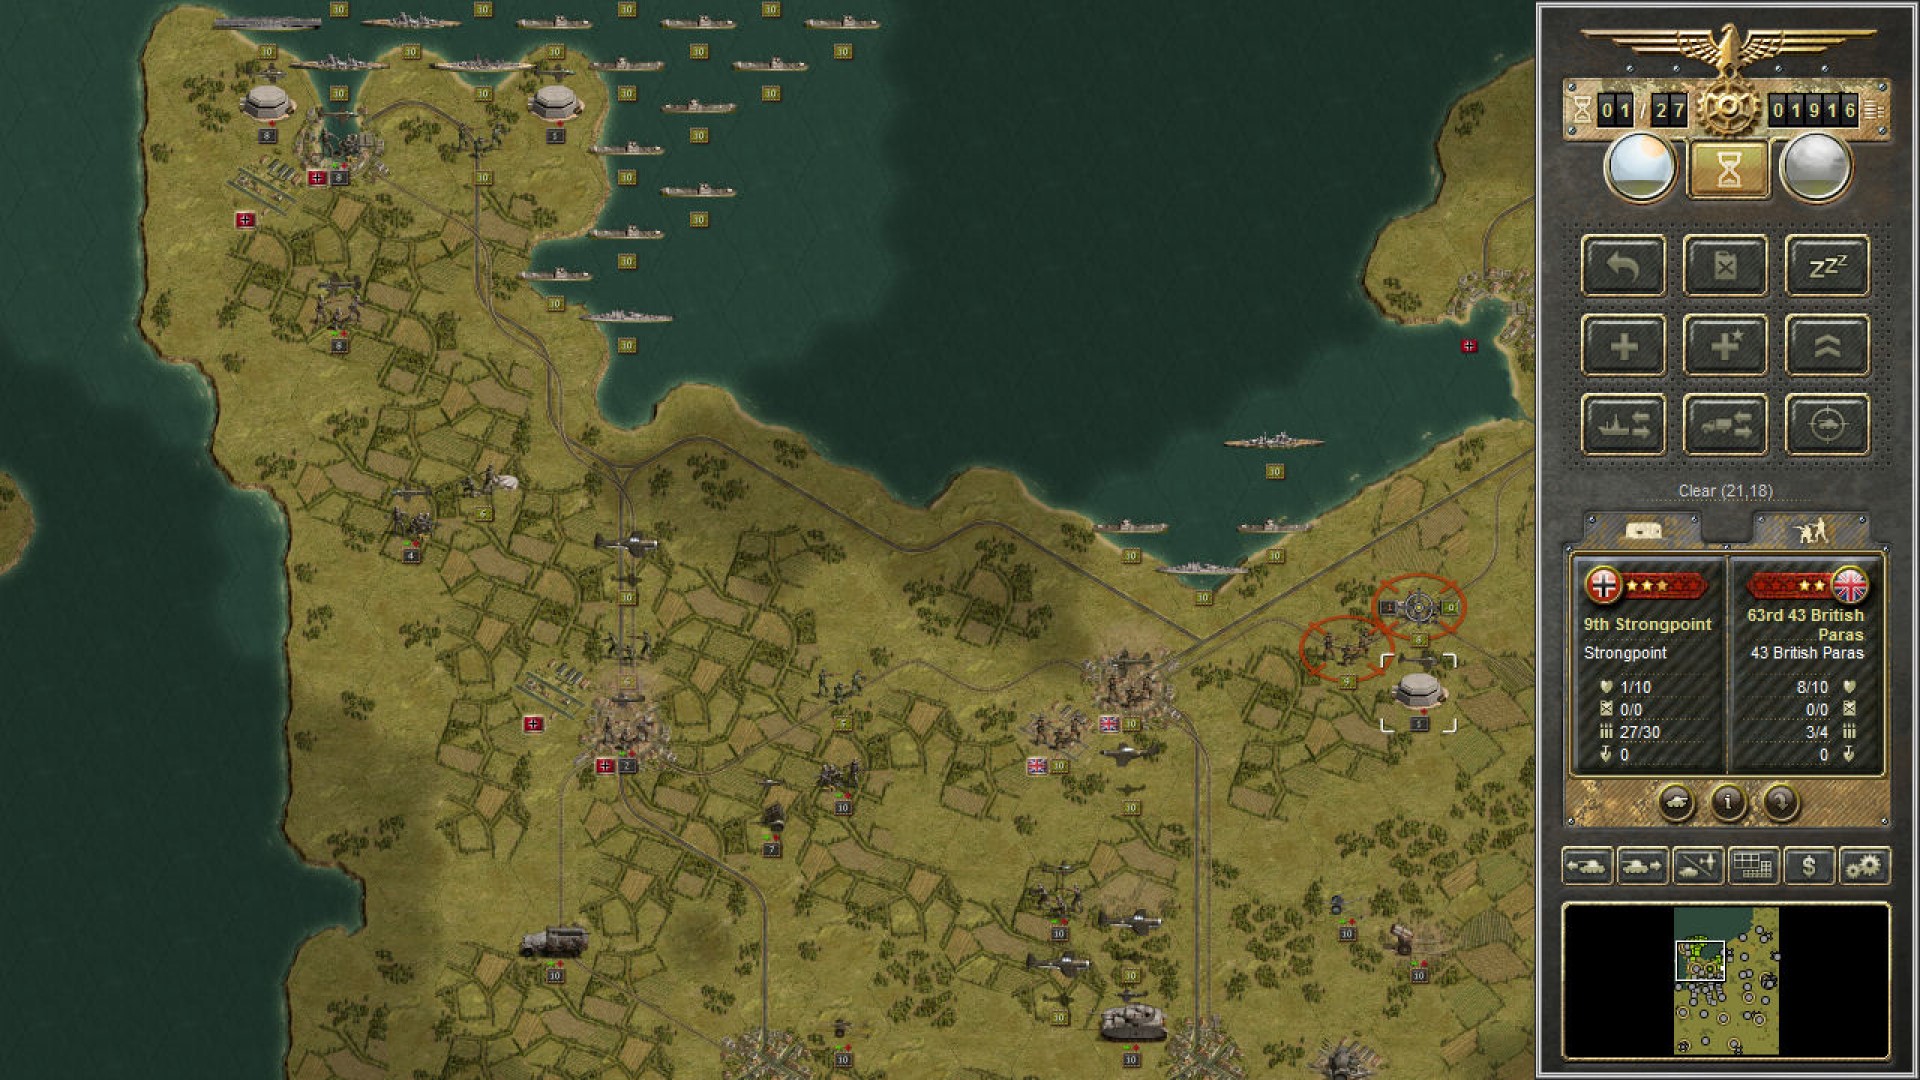 Game Perang Seluler Terbaik: Panzer Corps. Gambar menunjukkan peta dengan berbagai unit militer yang tersebar di seluruh ITT